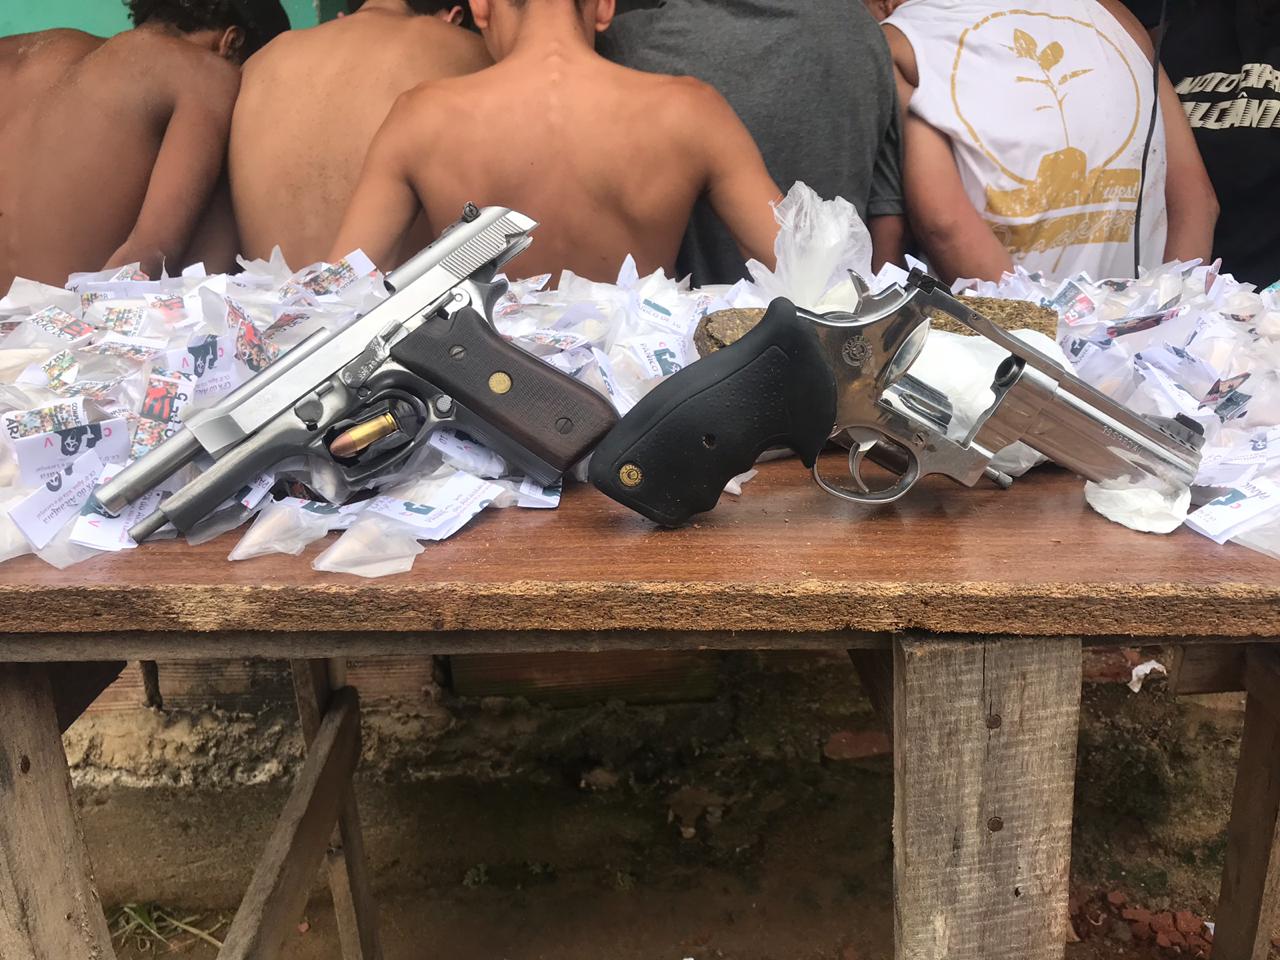 Sete bandidos são presos, armas e drogas apreendidas em São Gonçalo após informações do Disque Denúncia